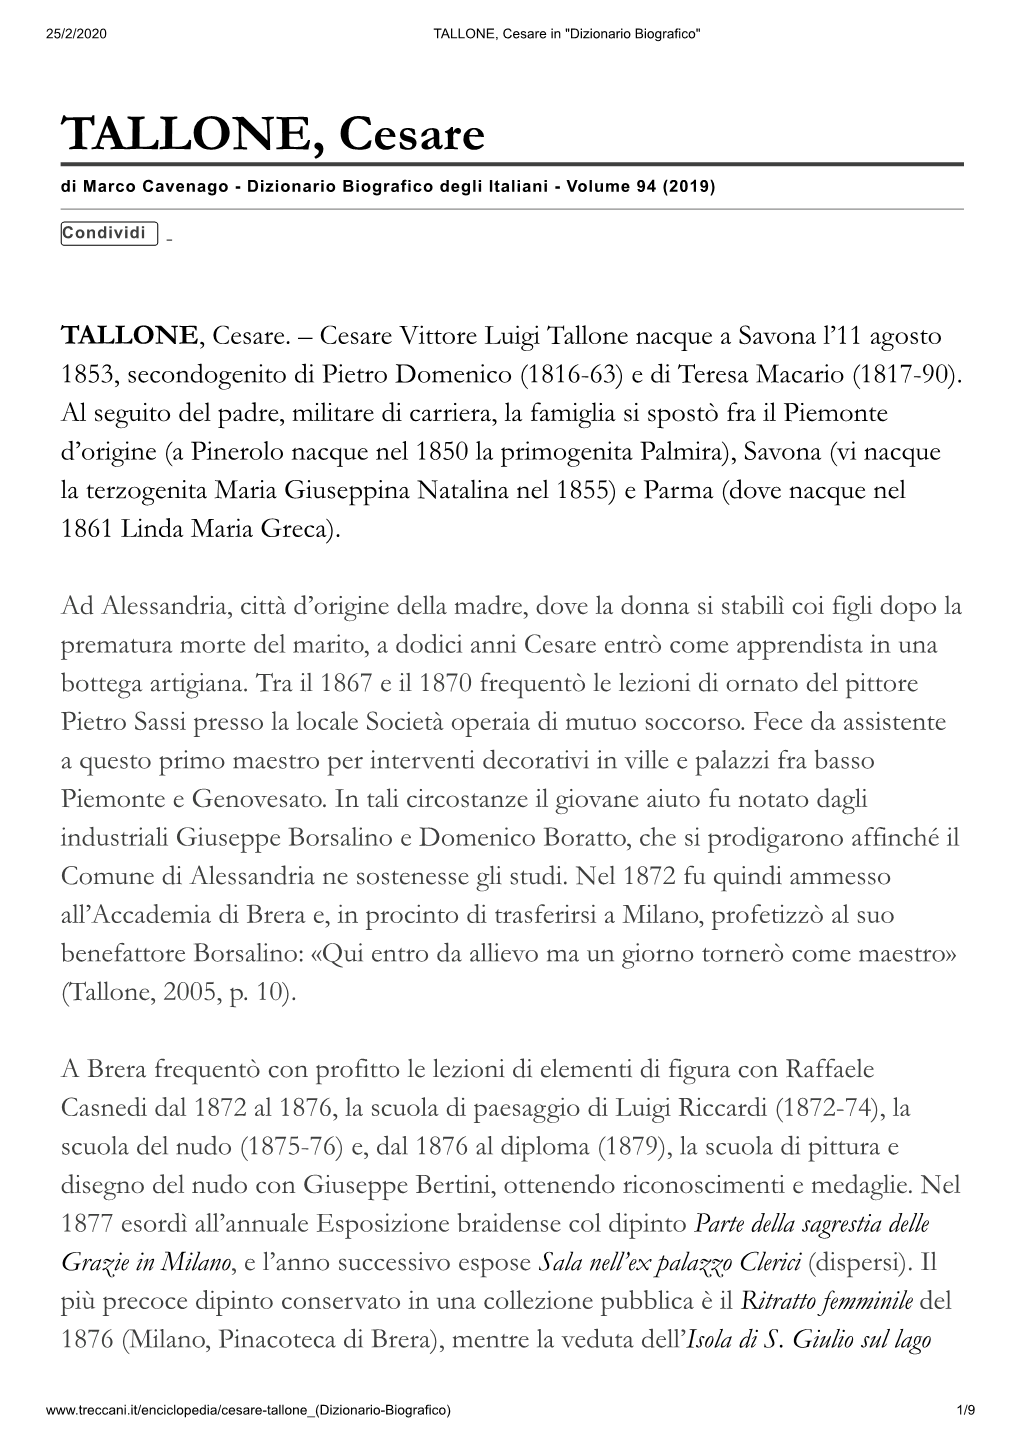 TALLONE, Cesare in "Dizionario Biografico"